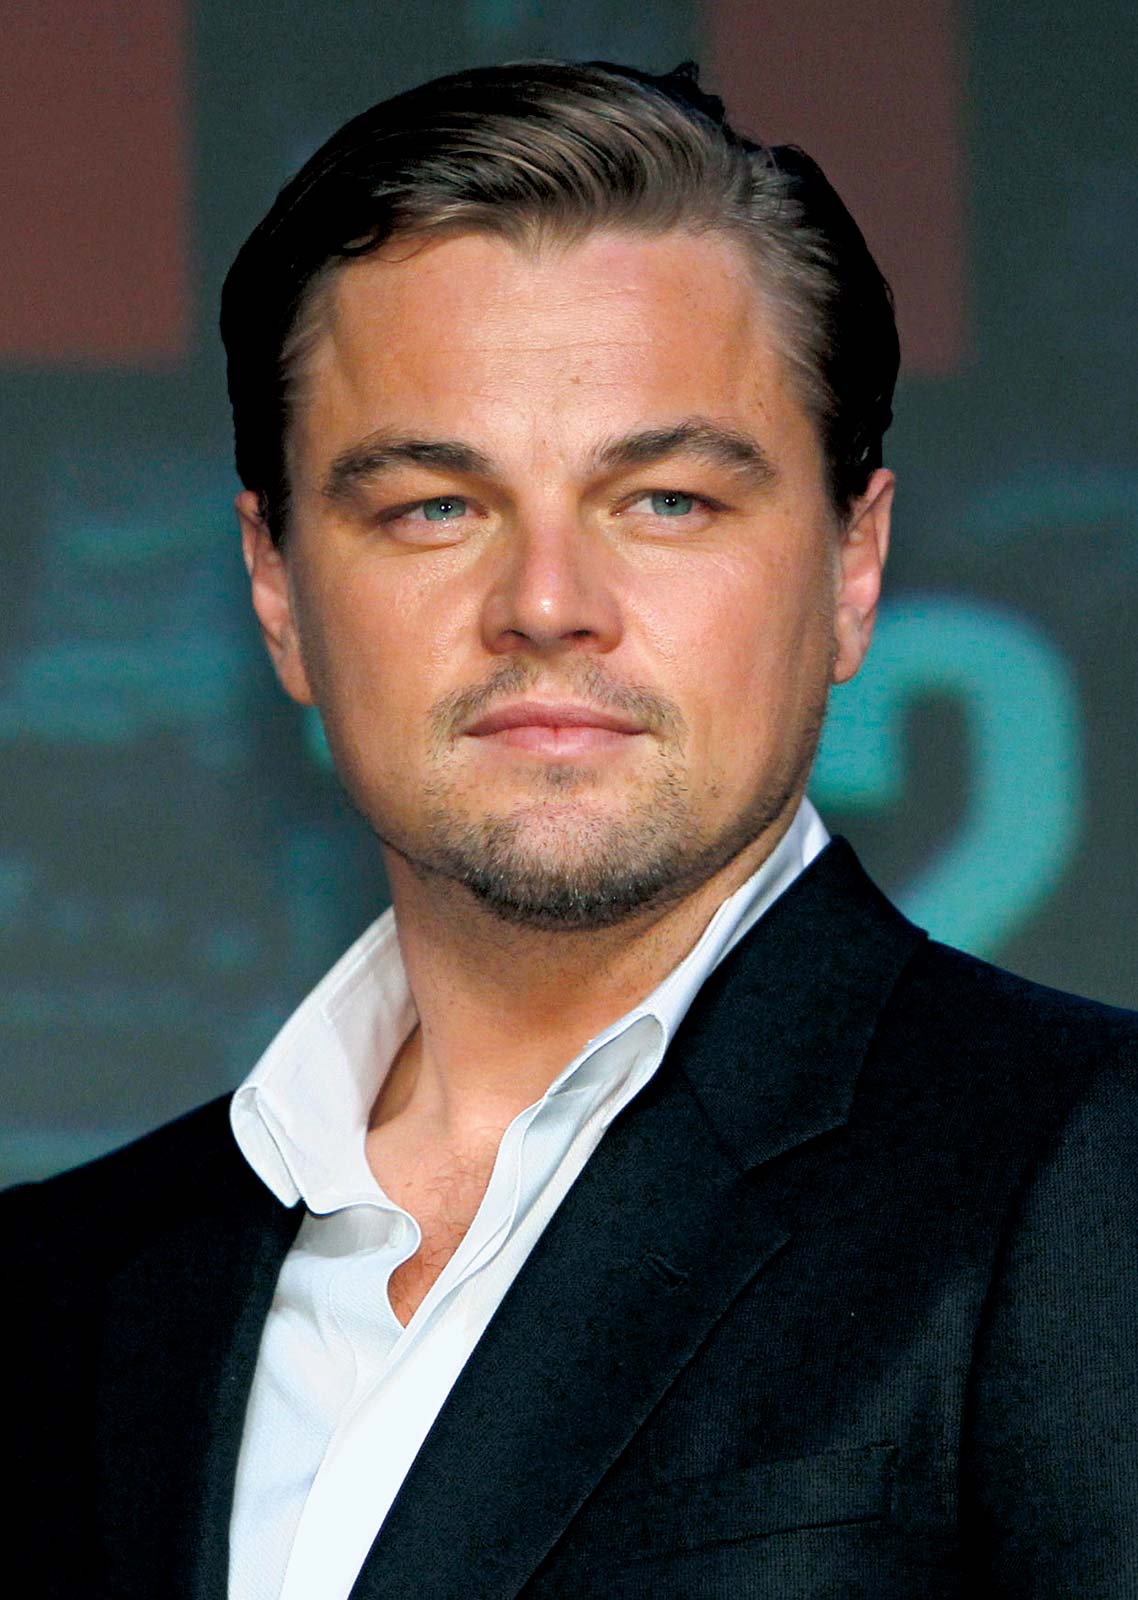 How tall is Leonardo DiCaprio?